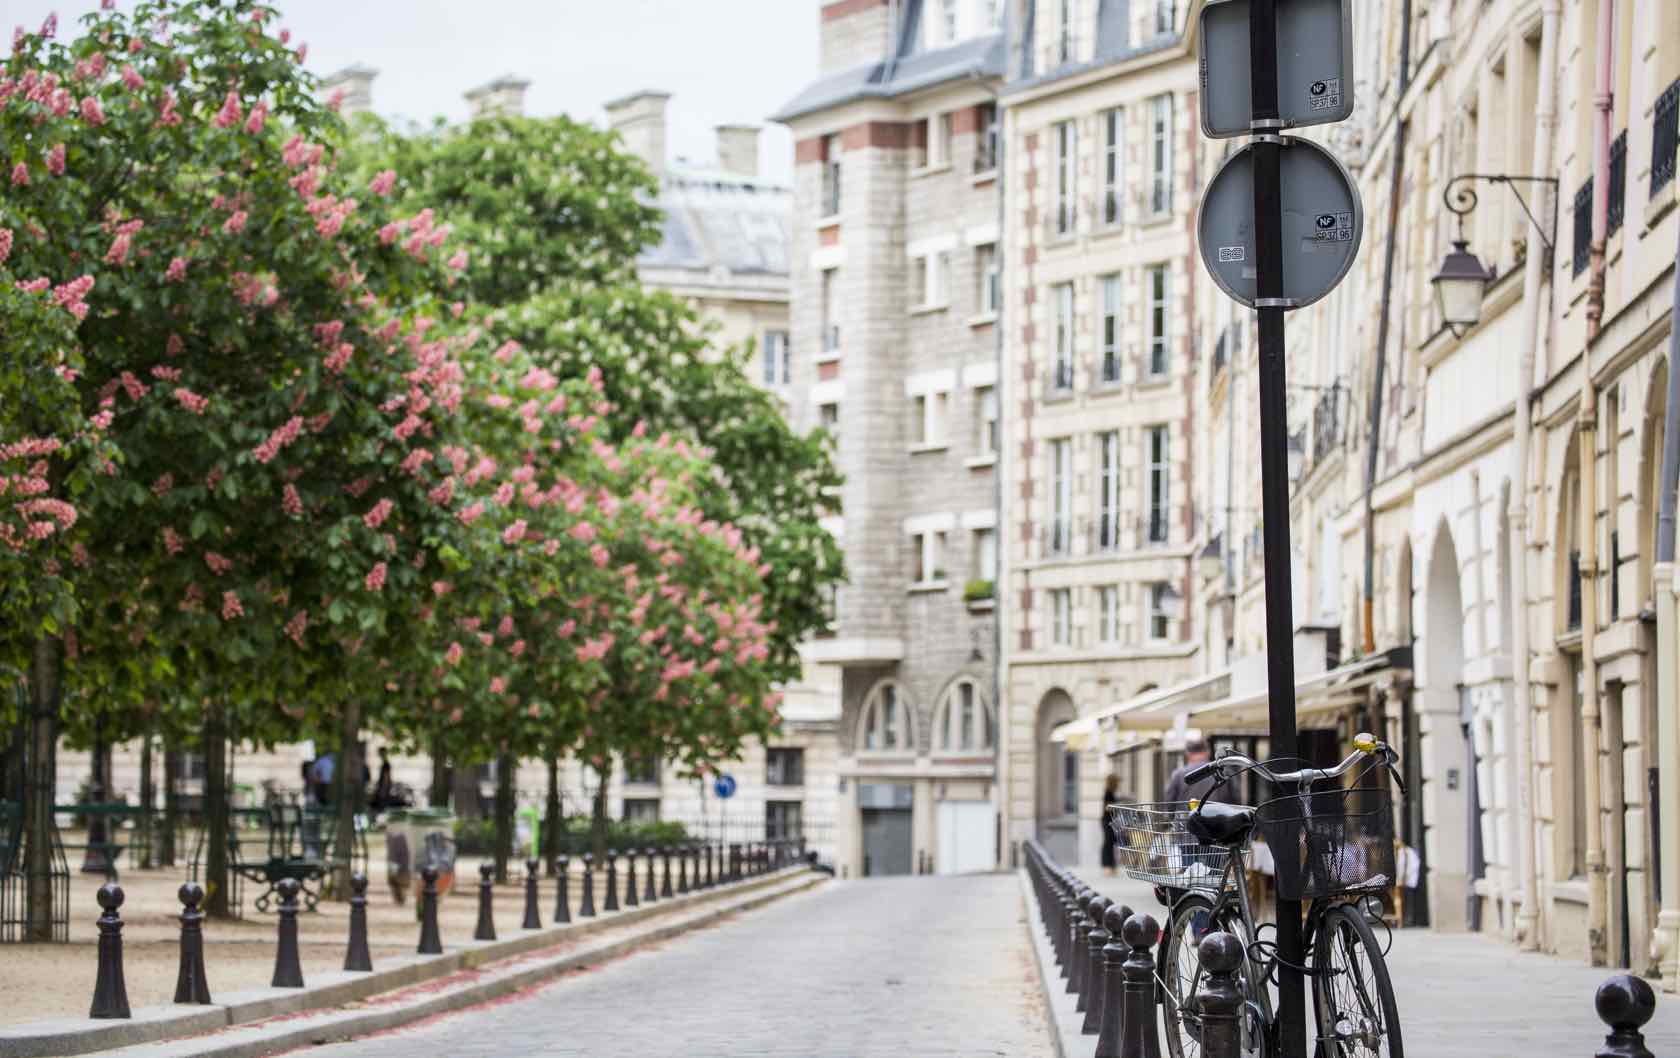 Place Vendôme - One of the Most Splendid Squares of Paris